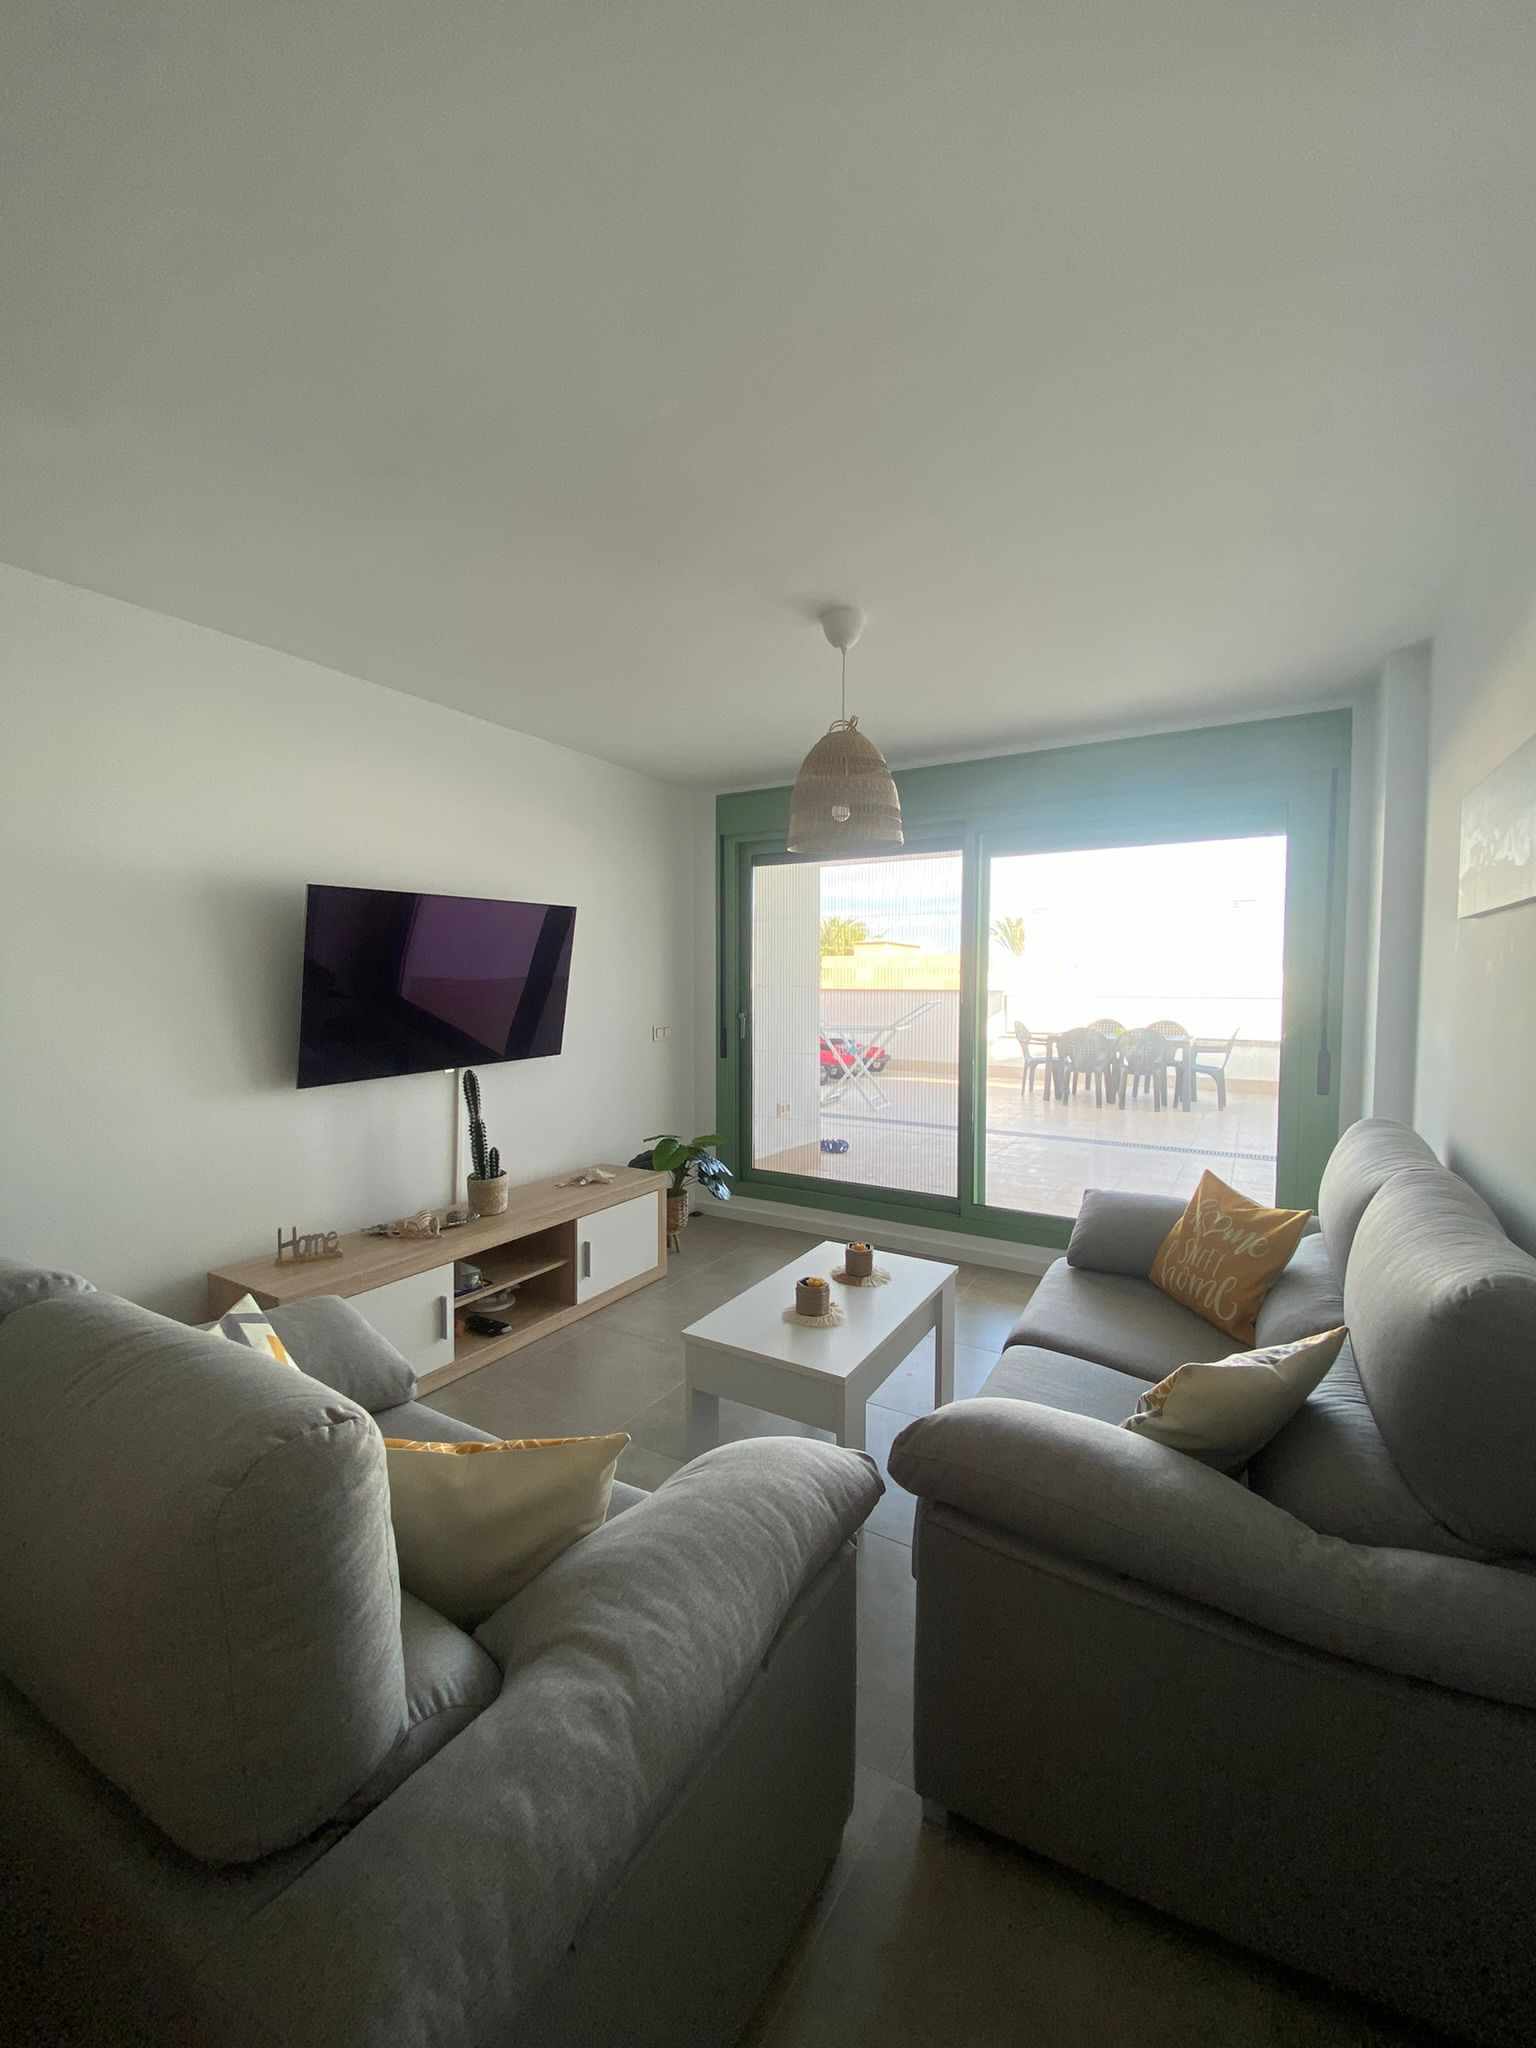 Impresionante apartamento de nueva construcción : Apartamento en alquiler en Mojácar, Almería